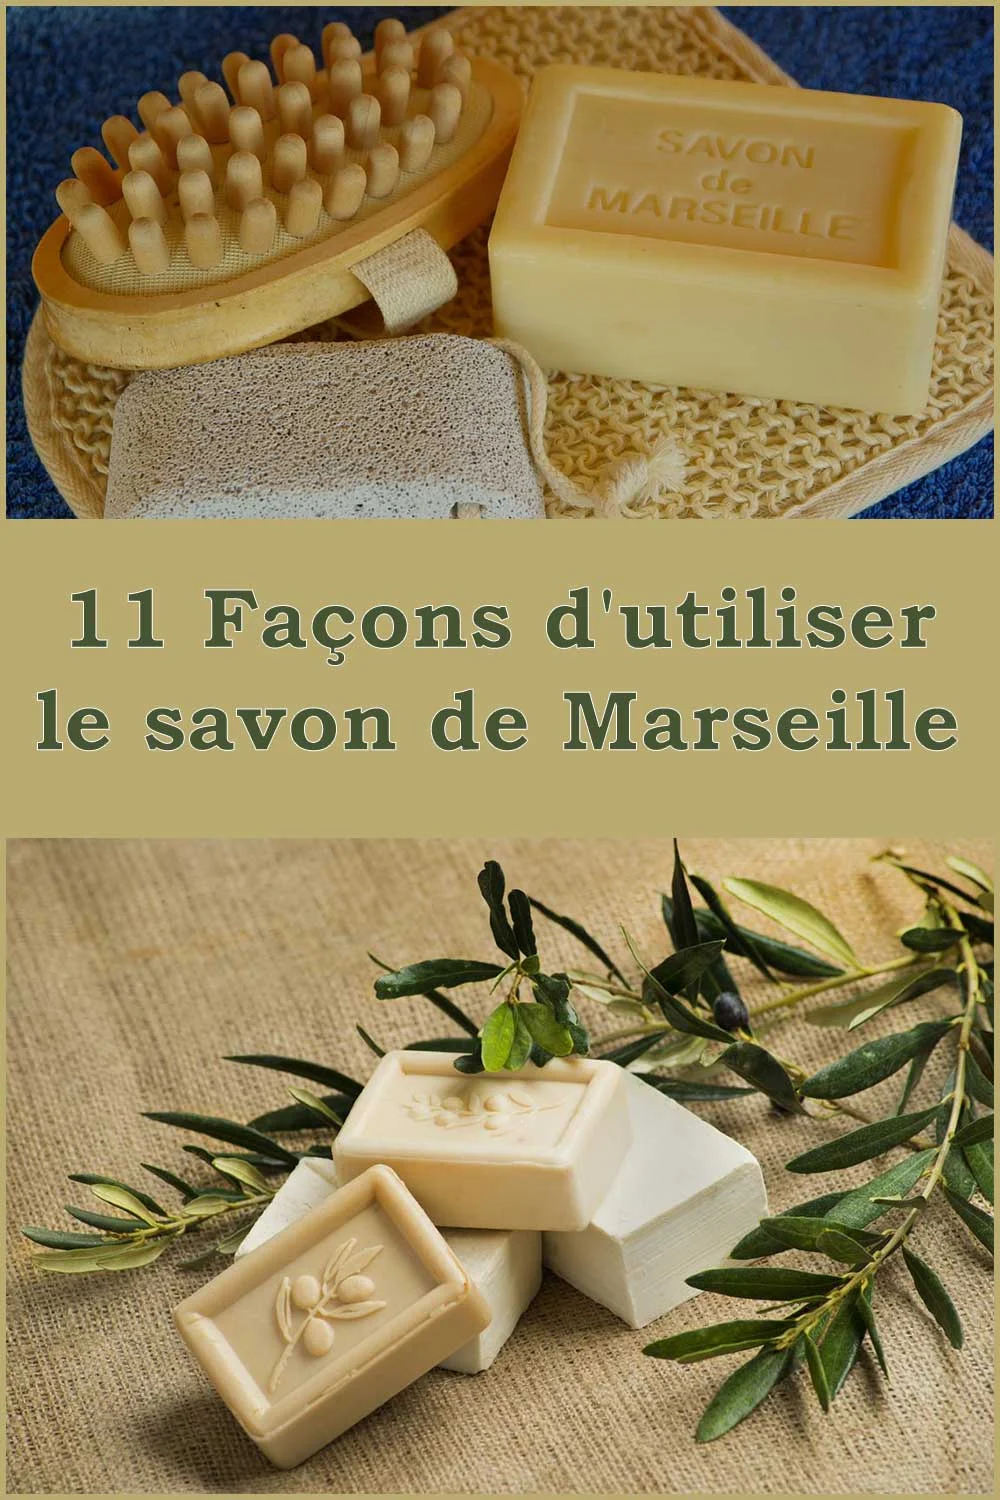 11 Façons d'utiliser le savon de Marseille